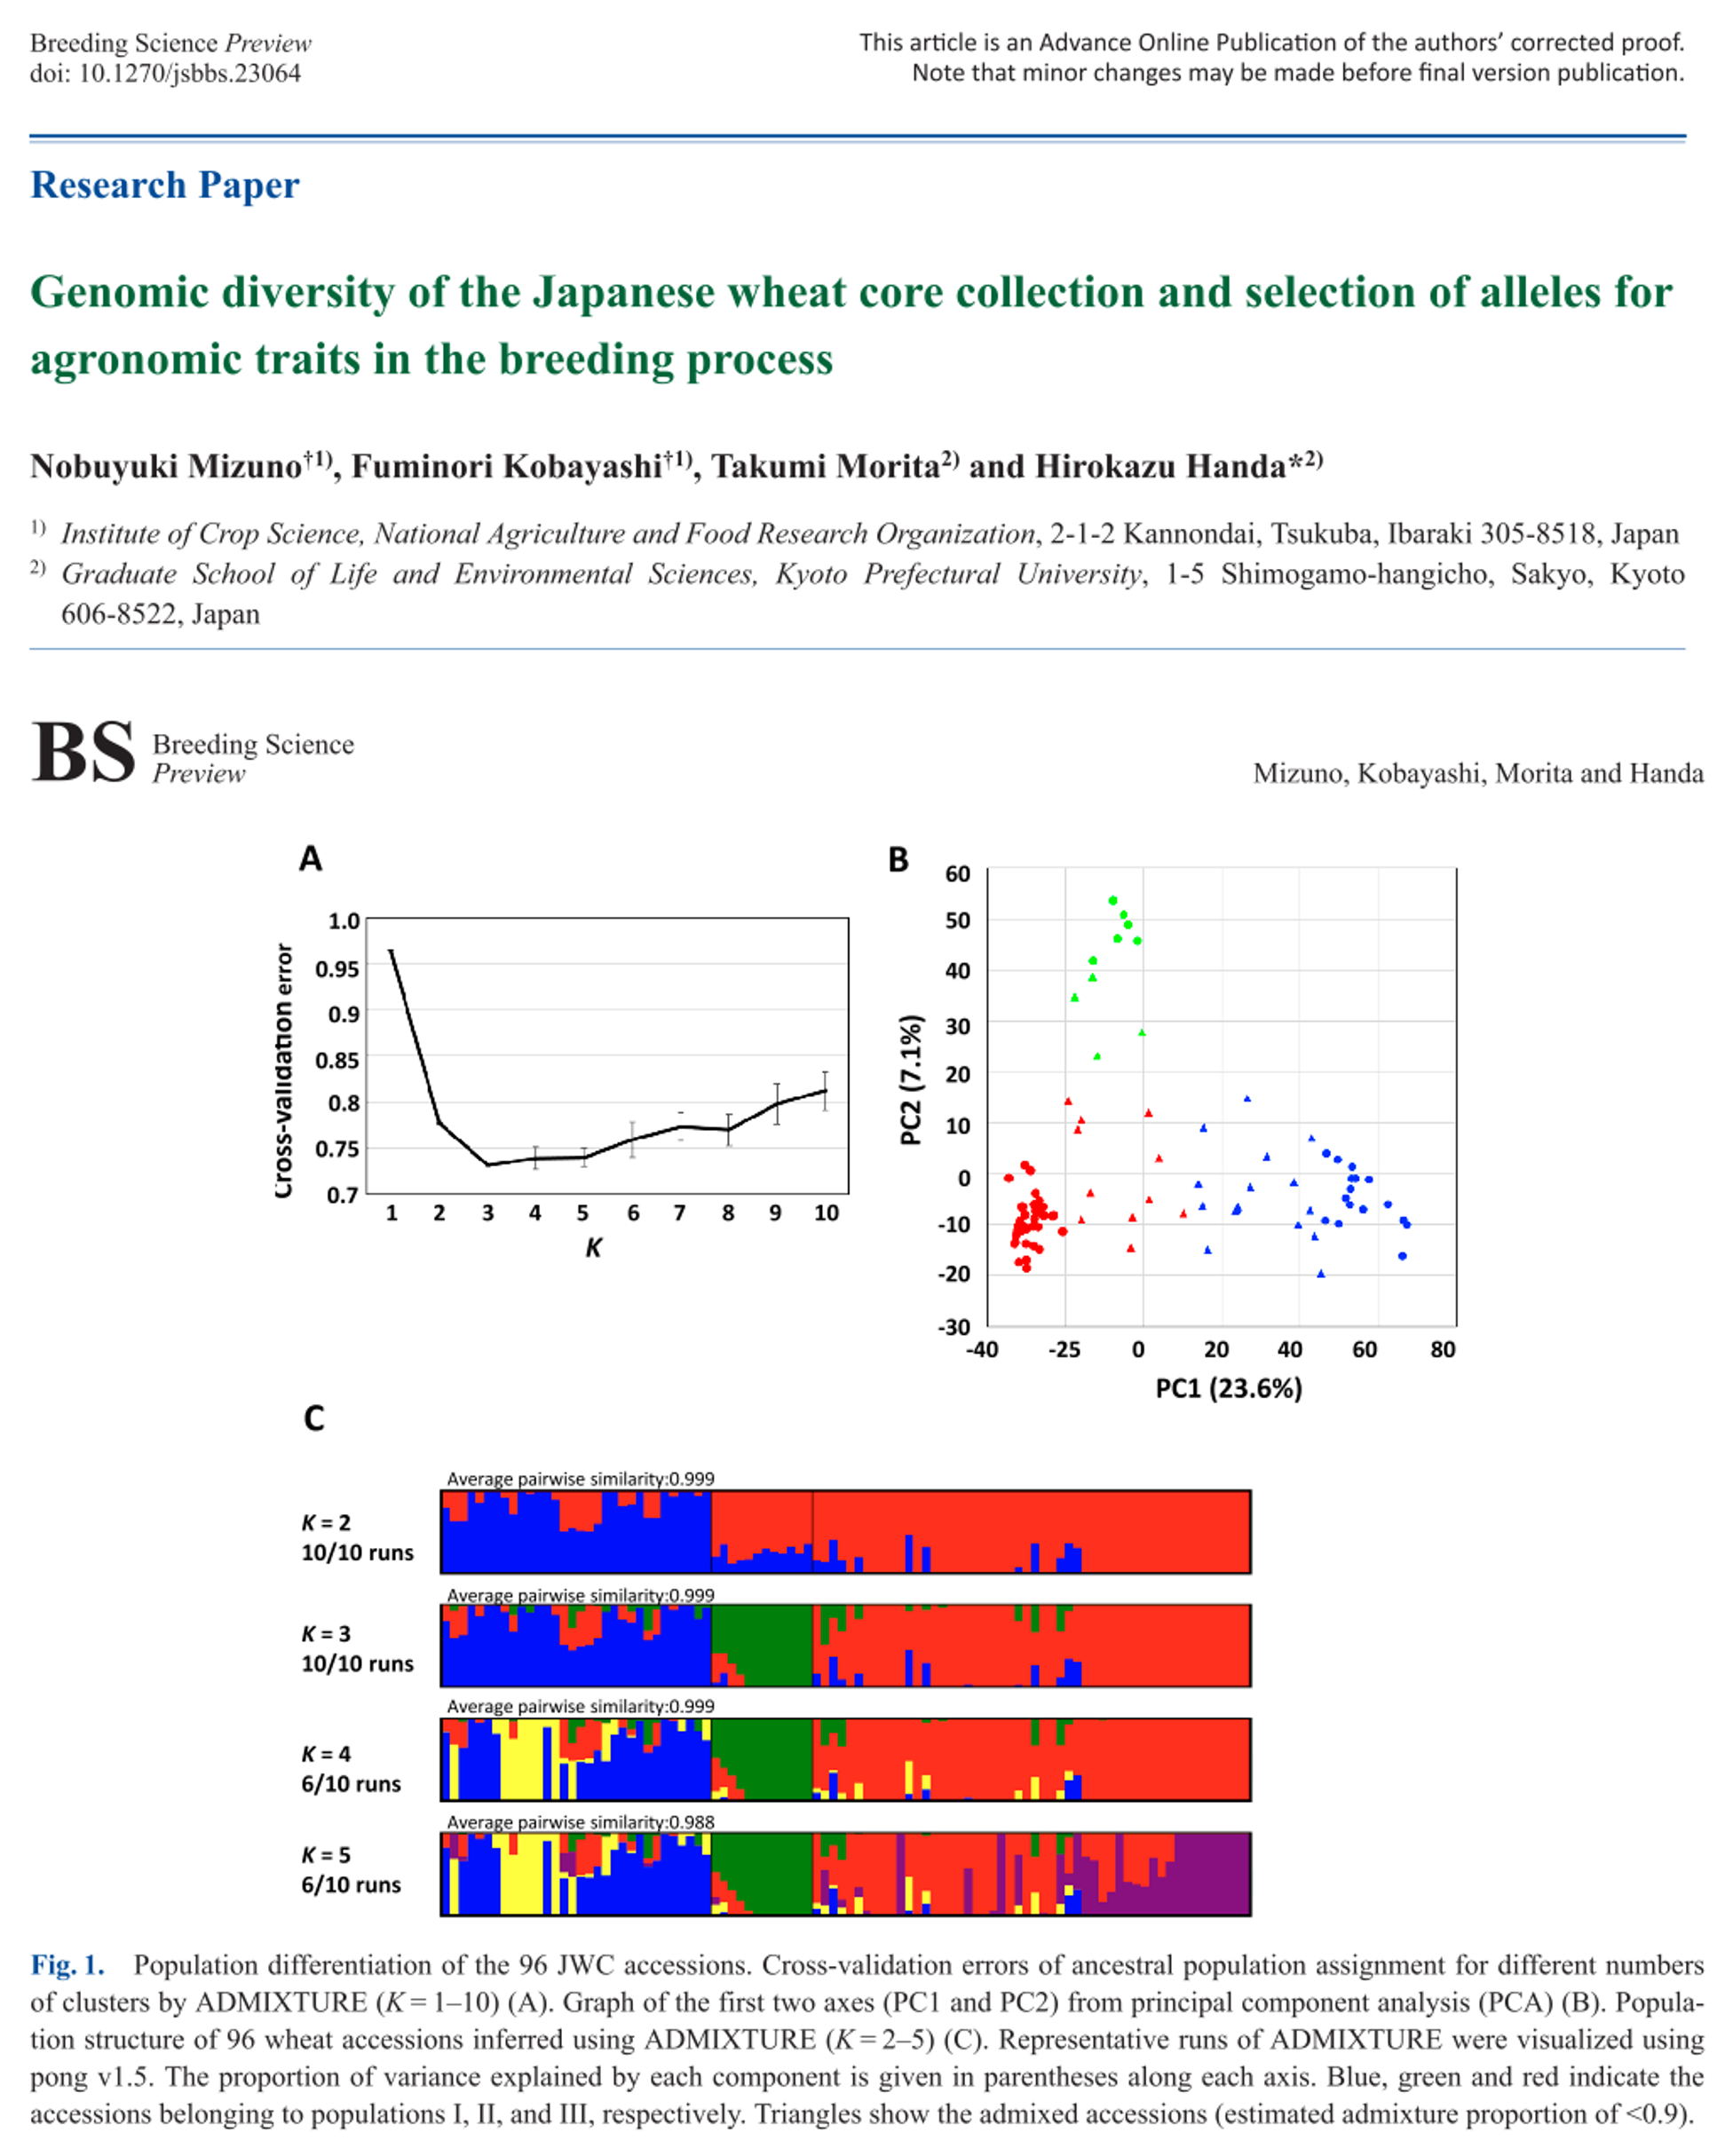 ハイスループット・ジェノタイピングデータを用いた日本のコムギコアコレクション（JWC）の解析から、日本産コムギの遺伝的多様性を明らかにした論文を、日本育種学会の学術誌Breeding Scienceに